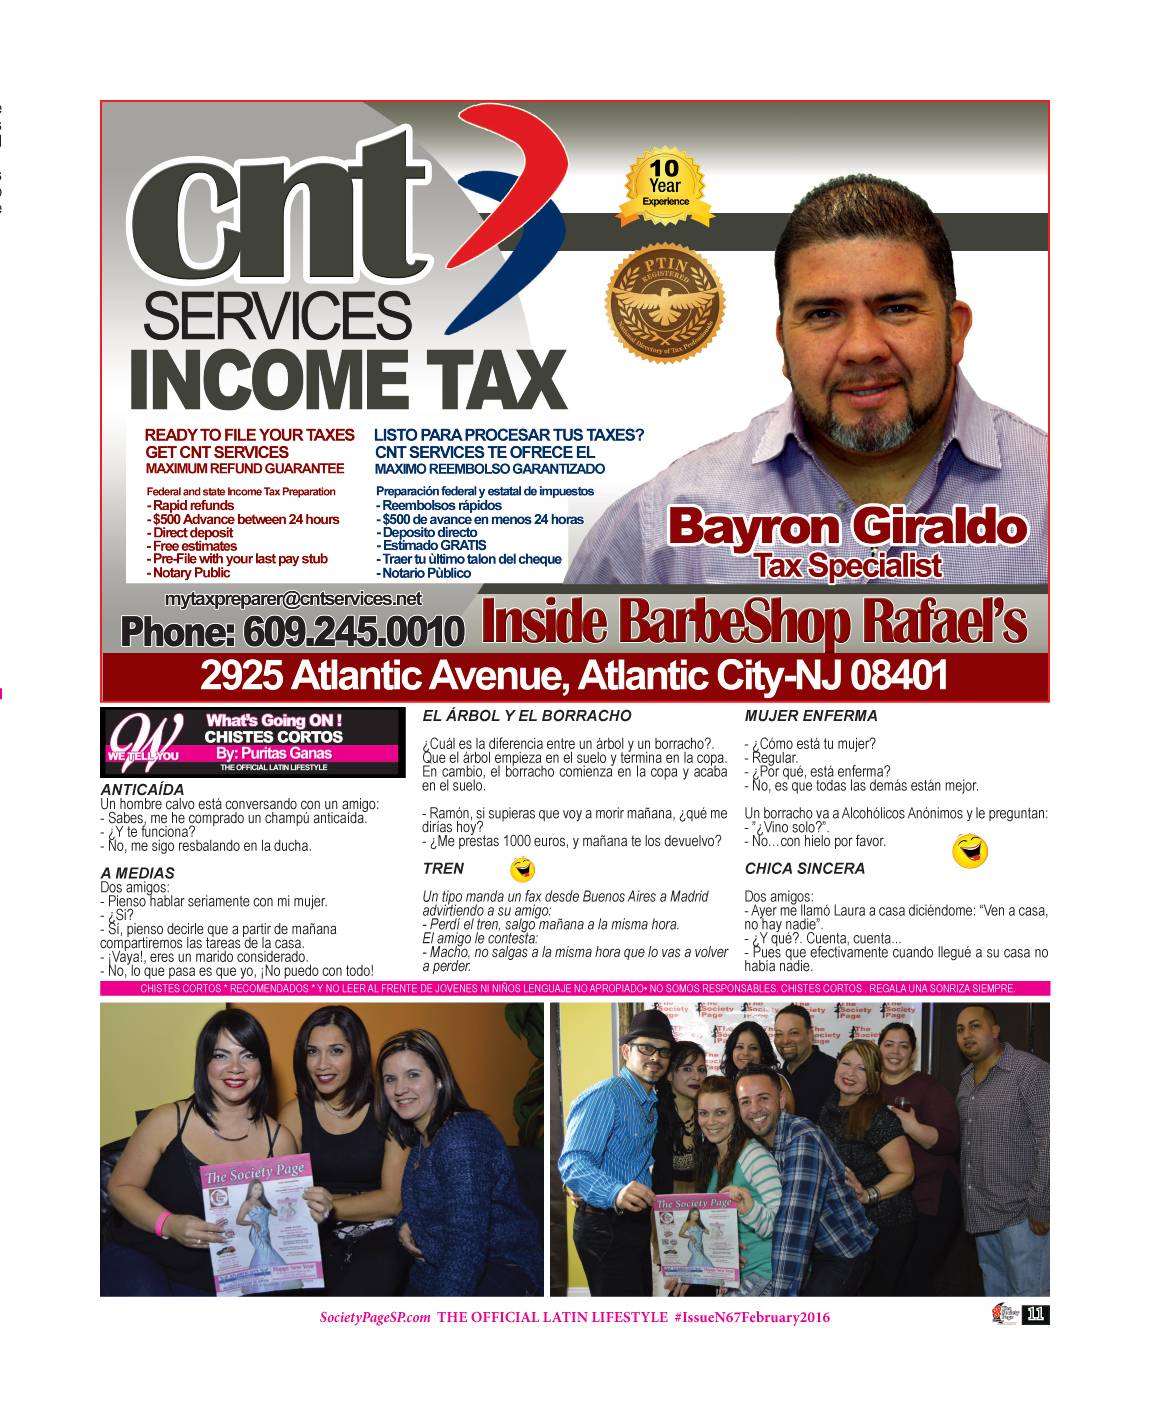 CNT SERVICES / INCOME TAX / BAYRON GIRALDO